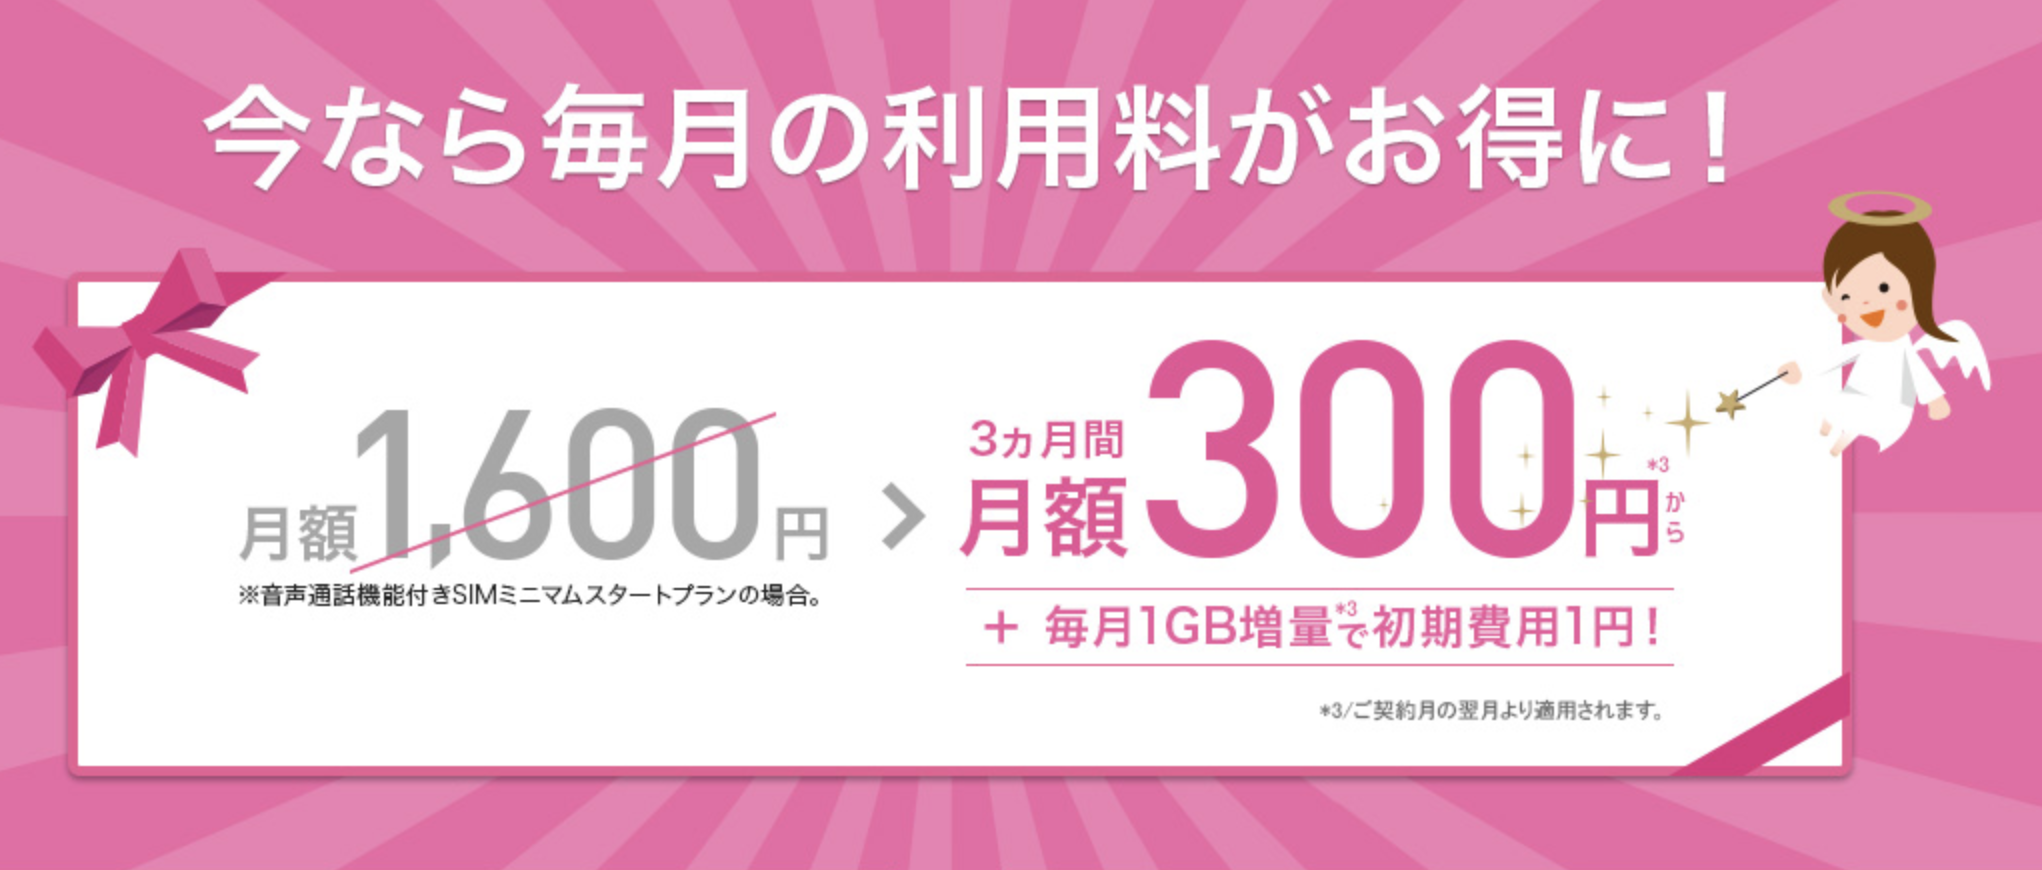 IIJmio 300円キャンペーン